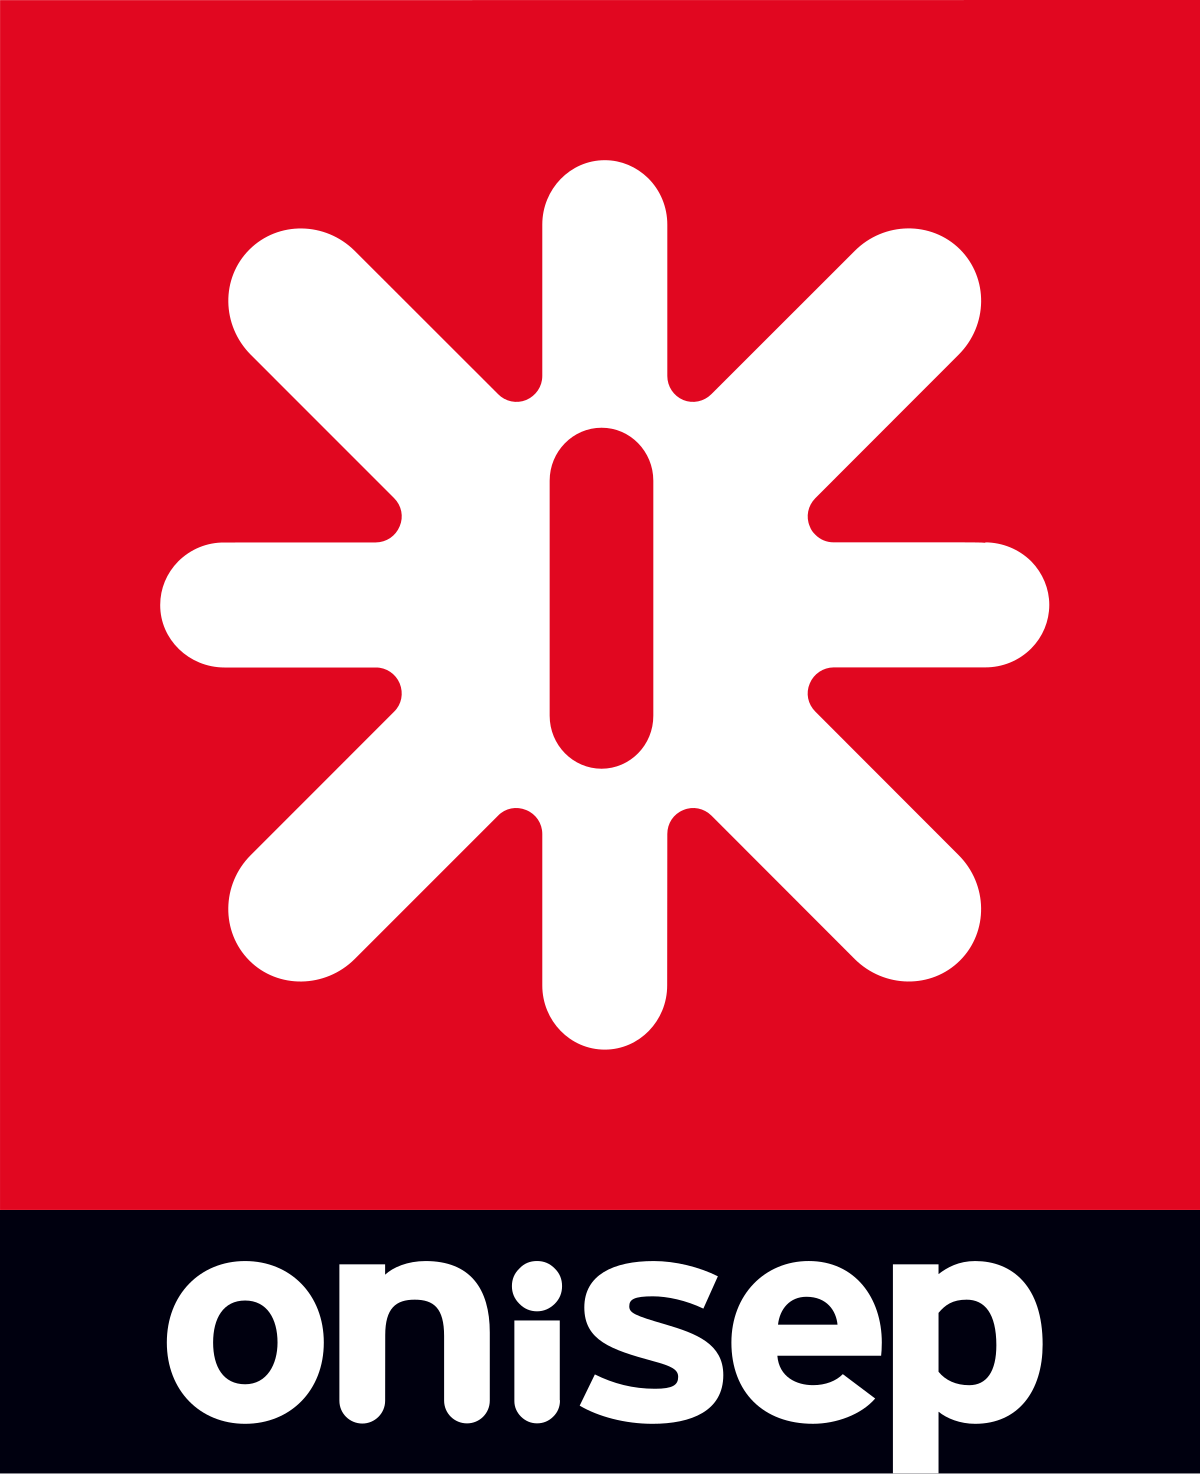 onisep